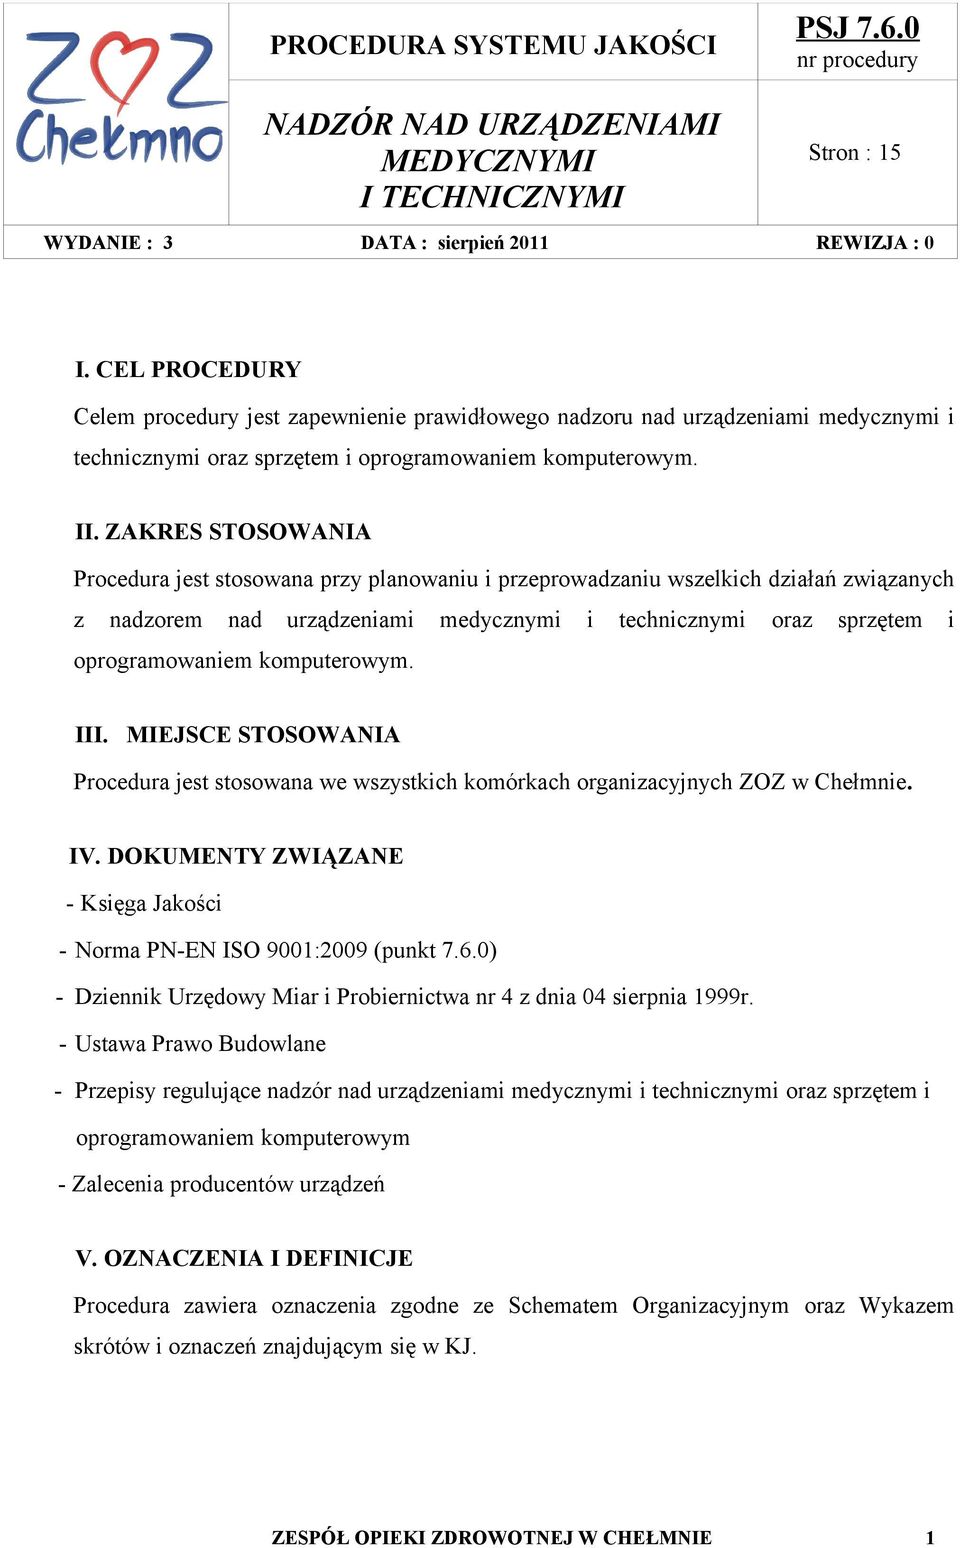 komputerowym. III. MIEJSCE STOSOWANIA Procedura jest stosowana we wszystkich komórkach organizacyjnych ZOZ w Chełmnie. IV. DOKUMENTY ZWIĄZANE - Księga Jakości - Norma PN-EN ISO 9001:2009 (punkt 7.6.